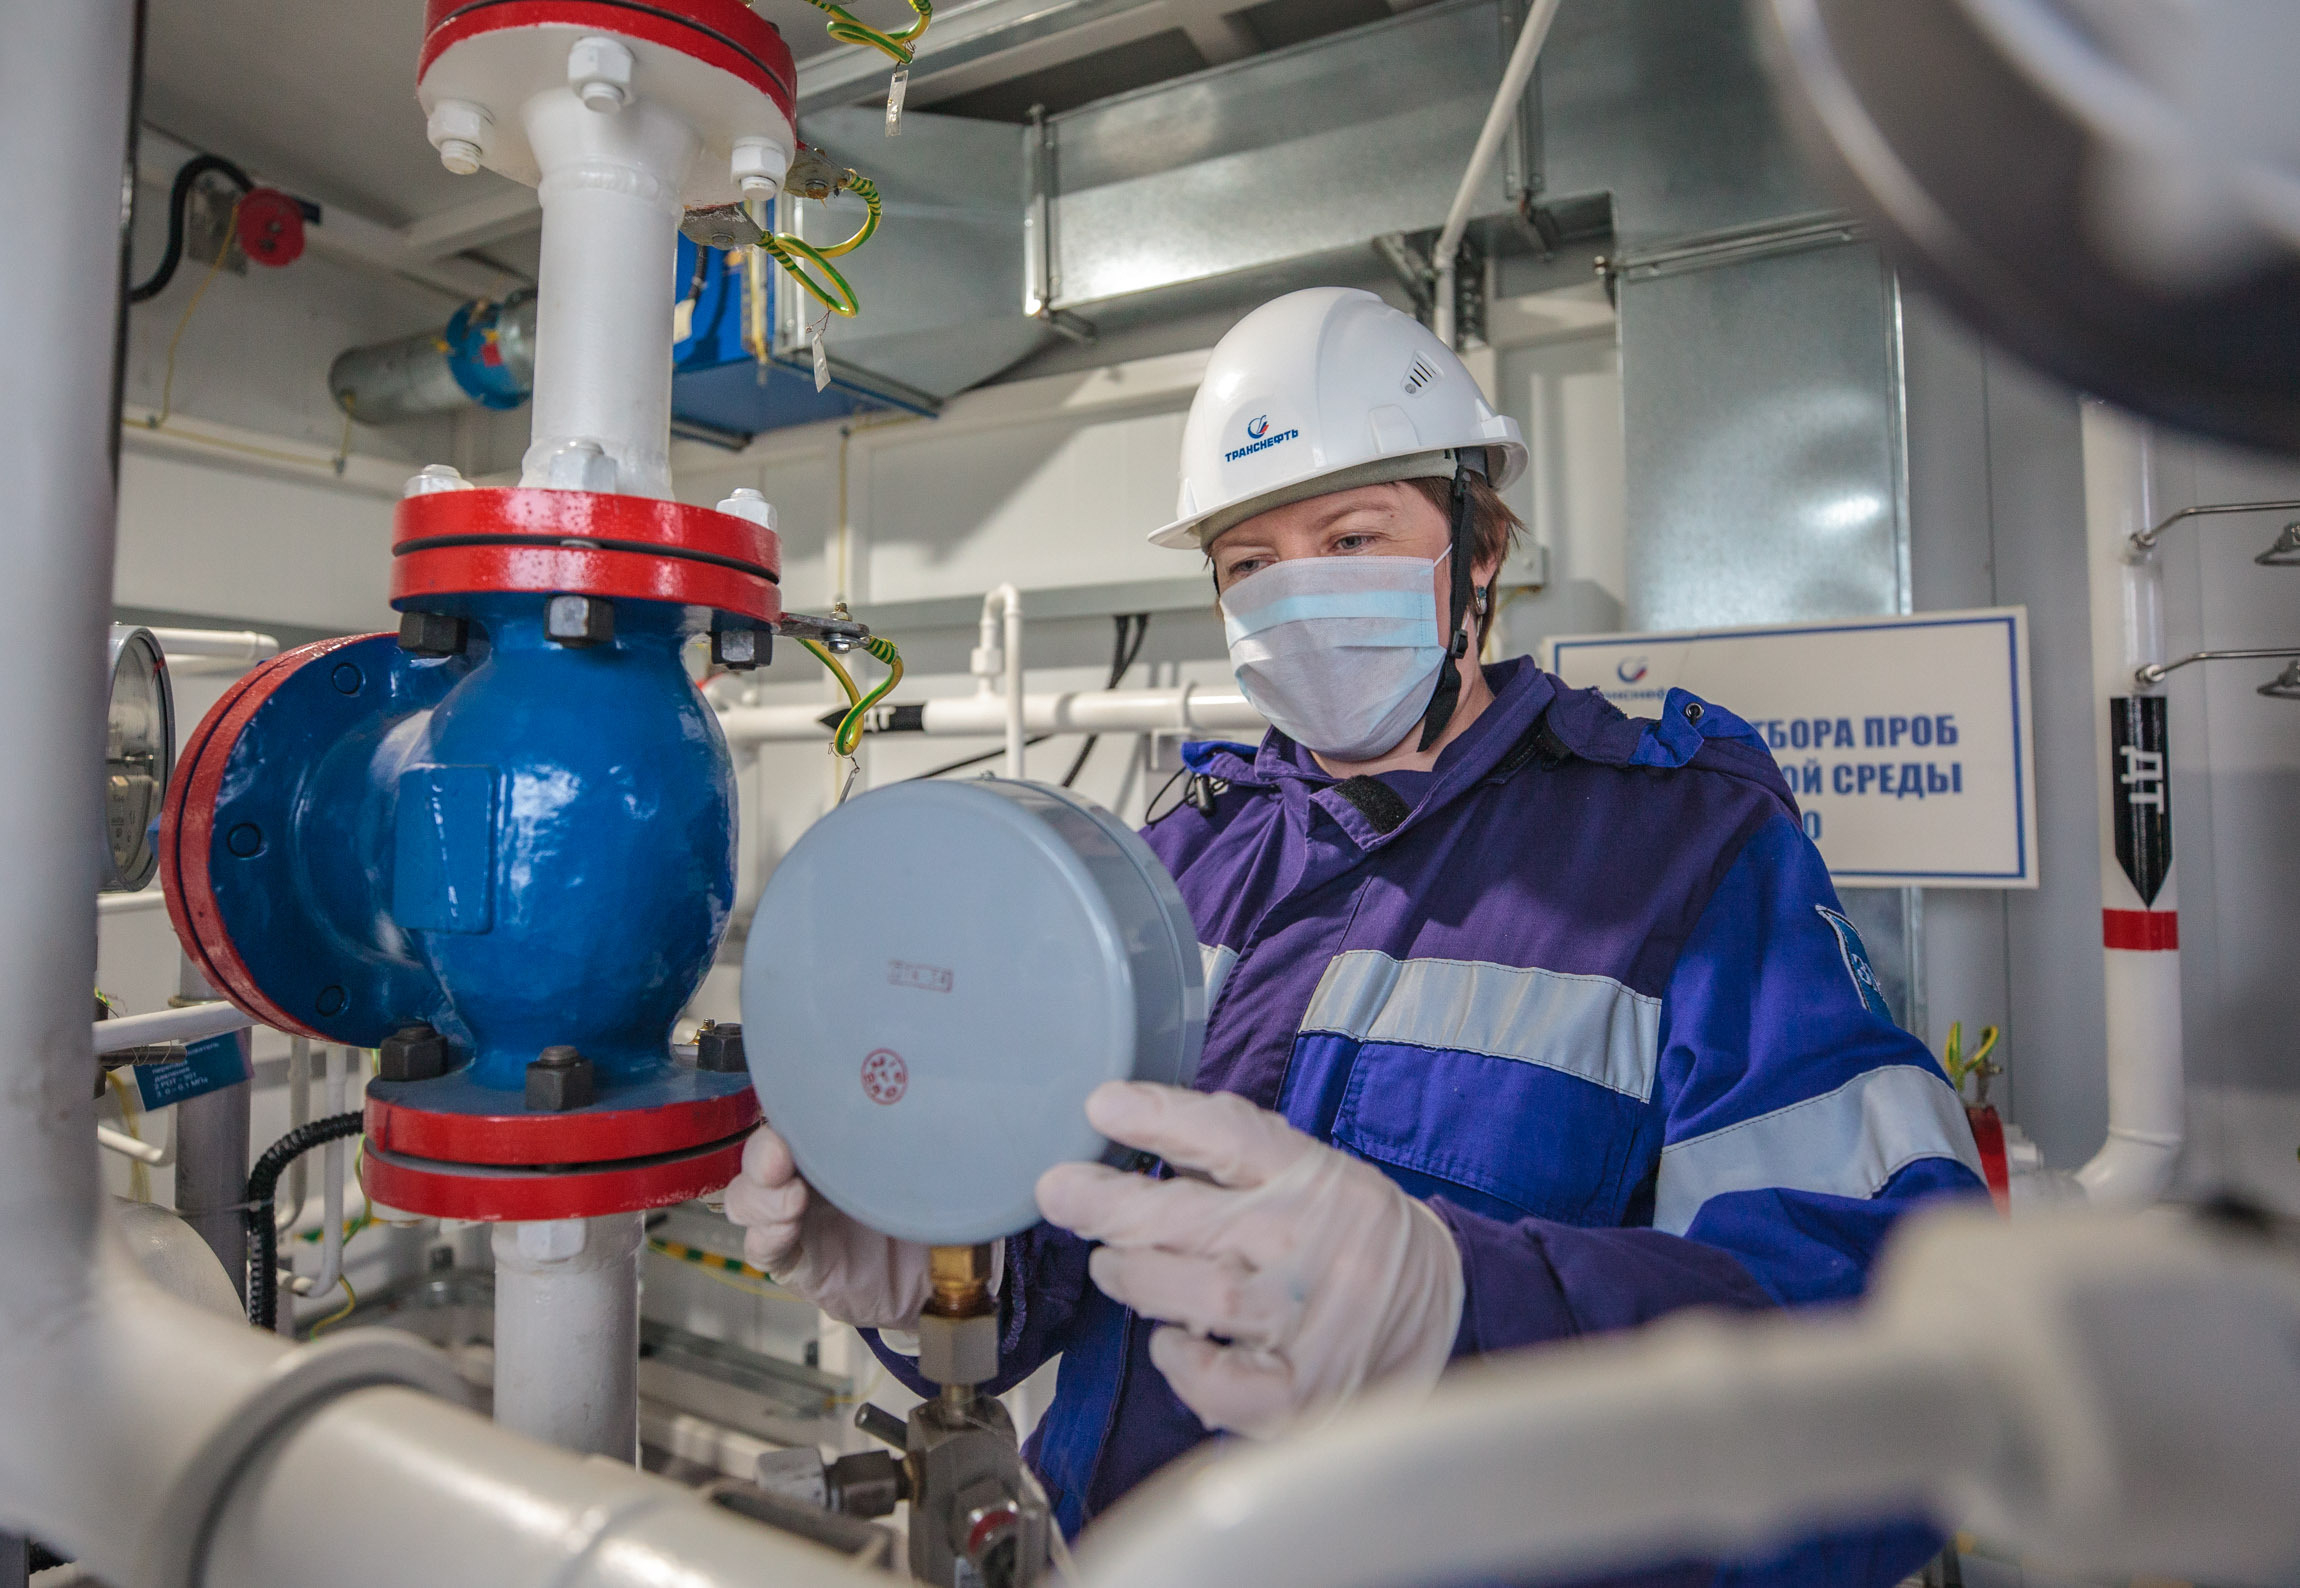 АО "Транснефть - Сибирь" в первом полугодии направило 295 млн руб. на мероприятия в сфере охраны труда